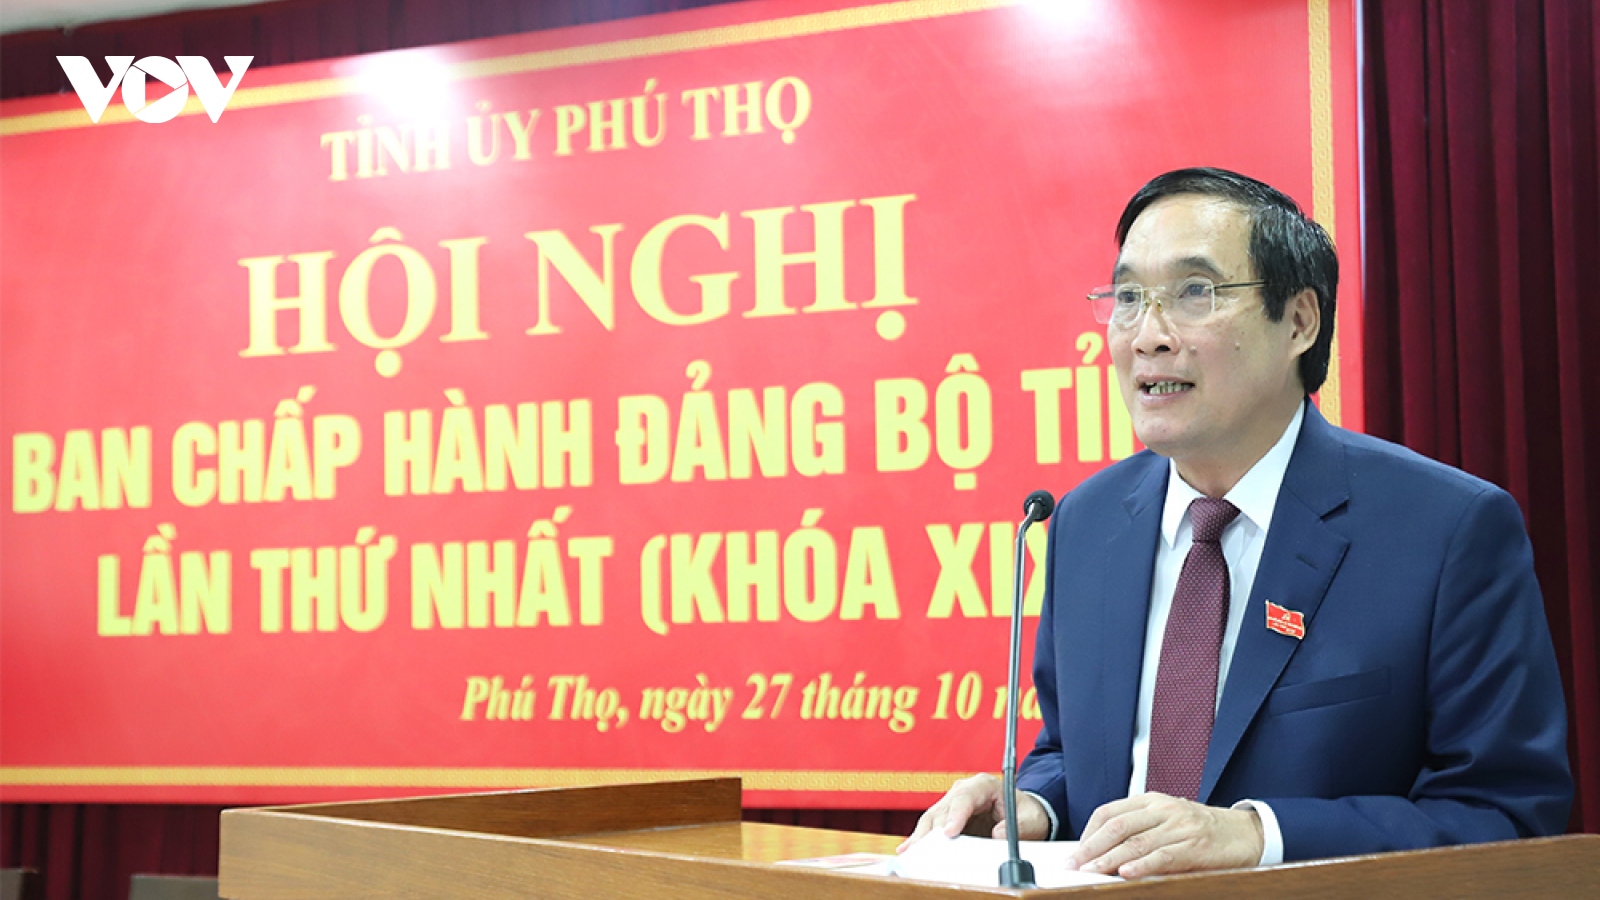 Ông Bùi Minh Châu tái đắc cử Bí thư Tỉnh ủy Phú Thọ nhiệm kỳ 2020-2025